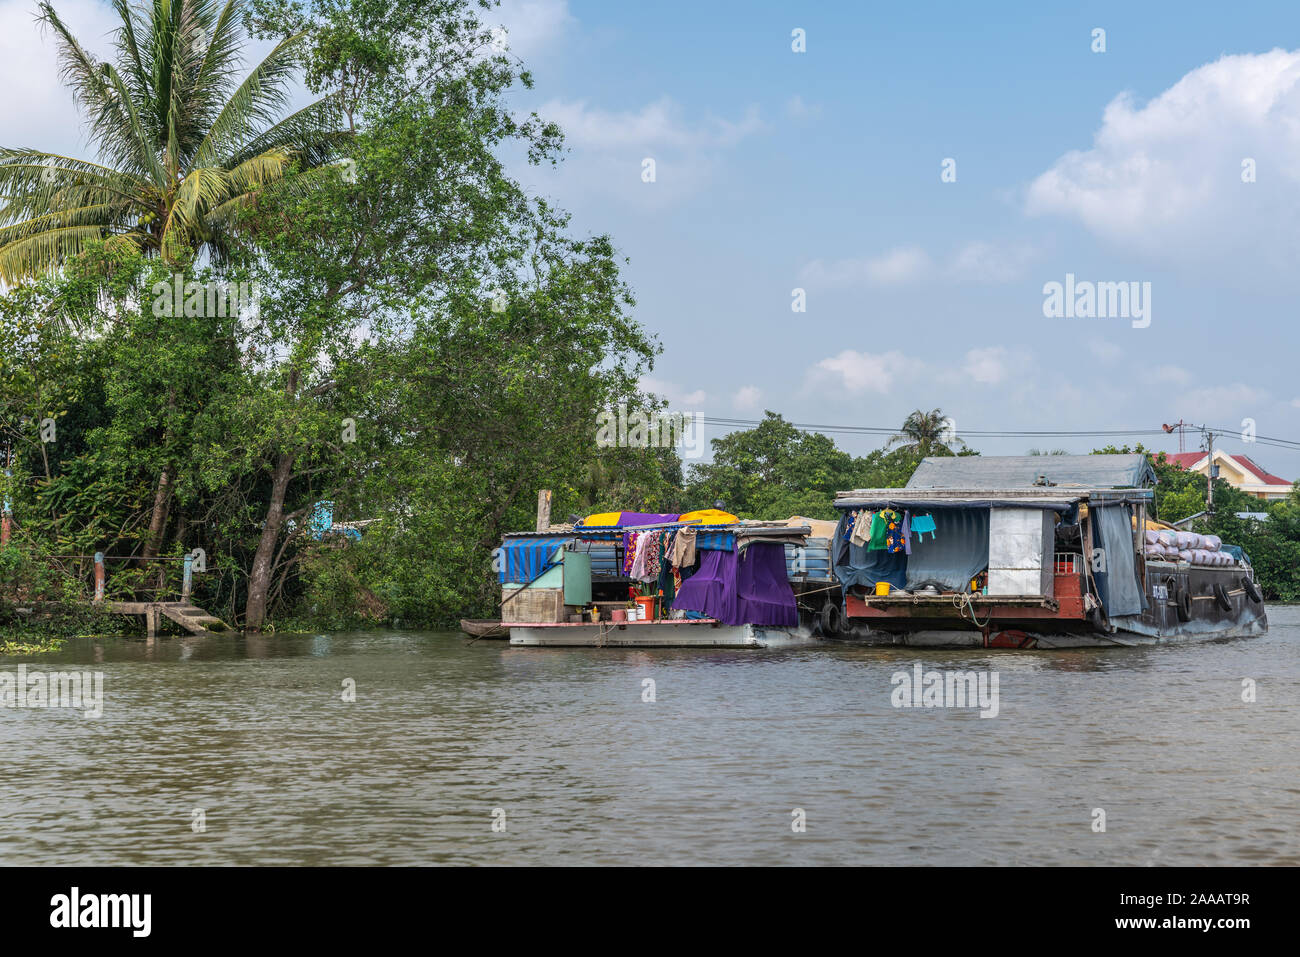 À Cai Be, Delta du Mekong, Vietnam - Mars 13, 2019 : le long du canal 28 Kinh. 2 chalands chargés jusqu'à l'ancre sous le feuillage vert cloudscape bleu. Retour de voile Banque D'Images